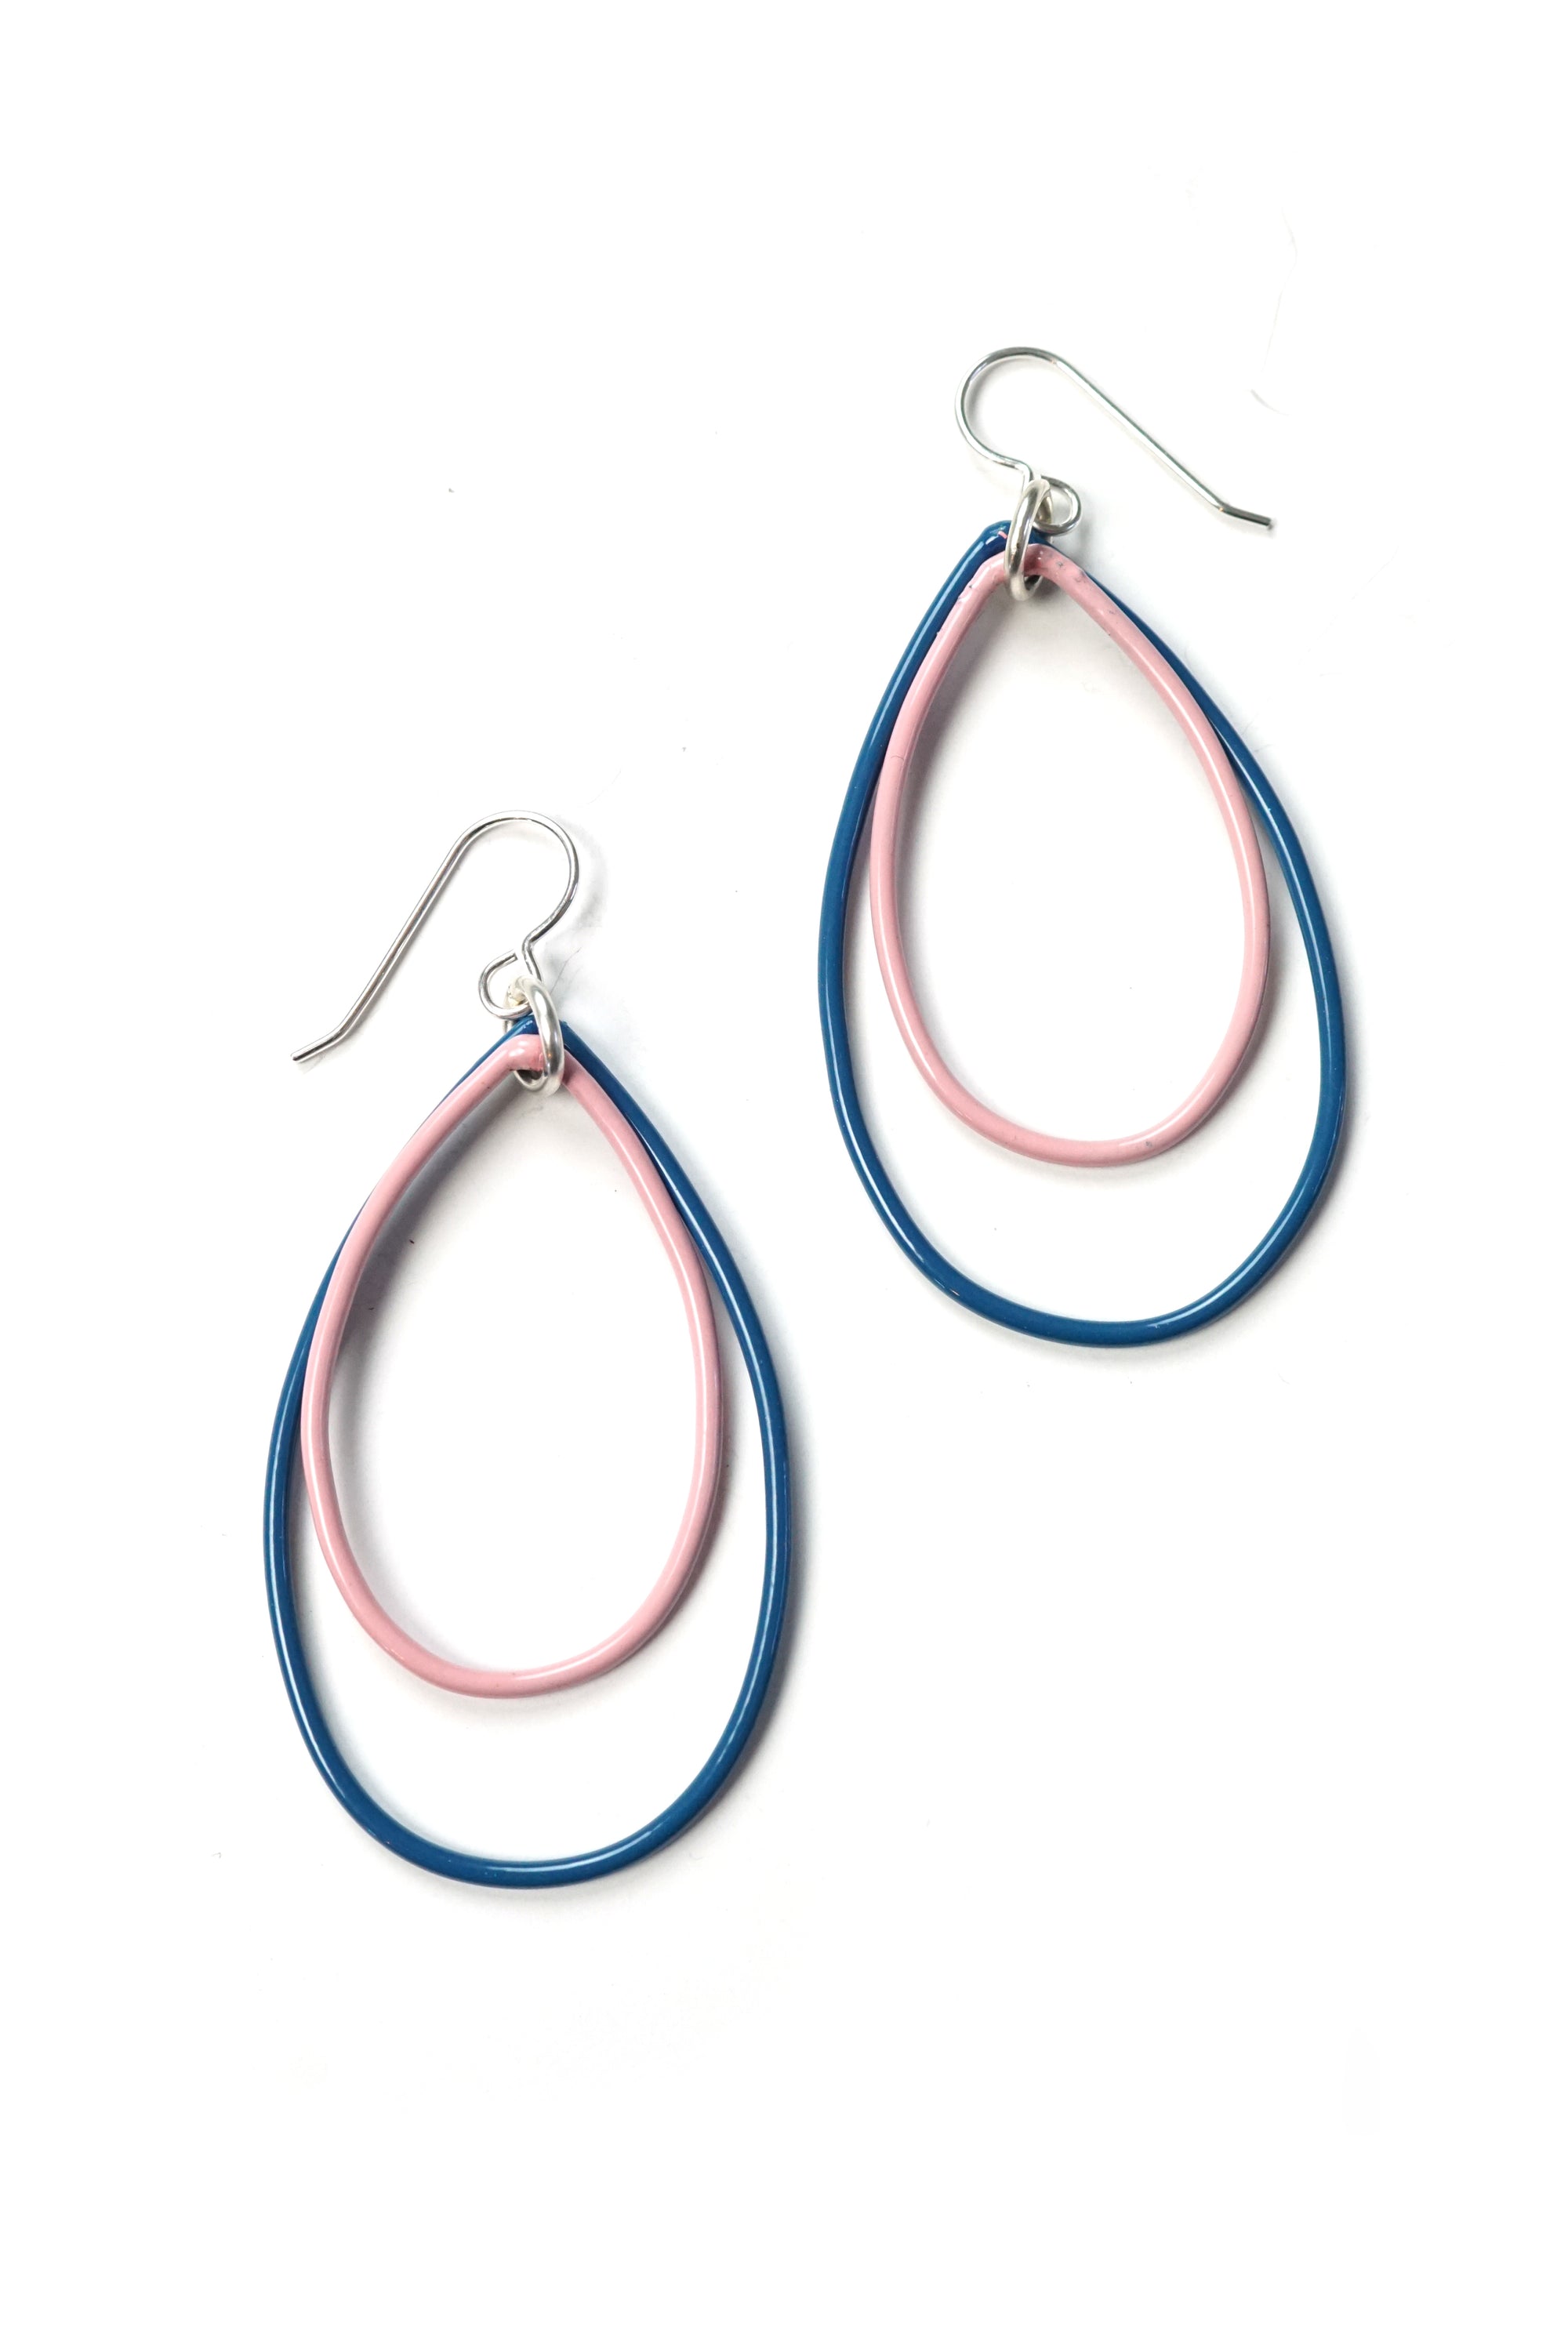 Rachel earrings in Azure Blue and Bubble Gum